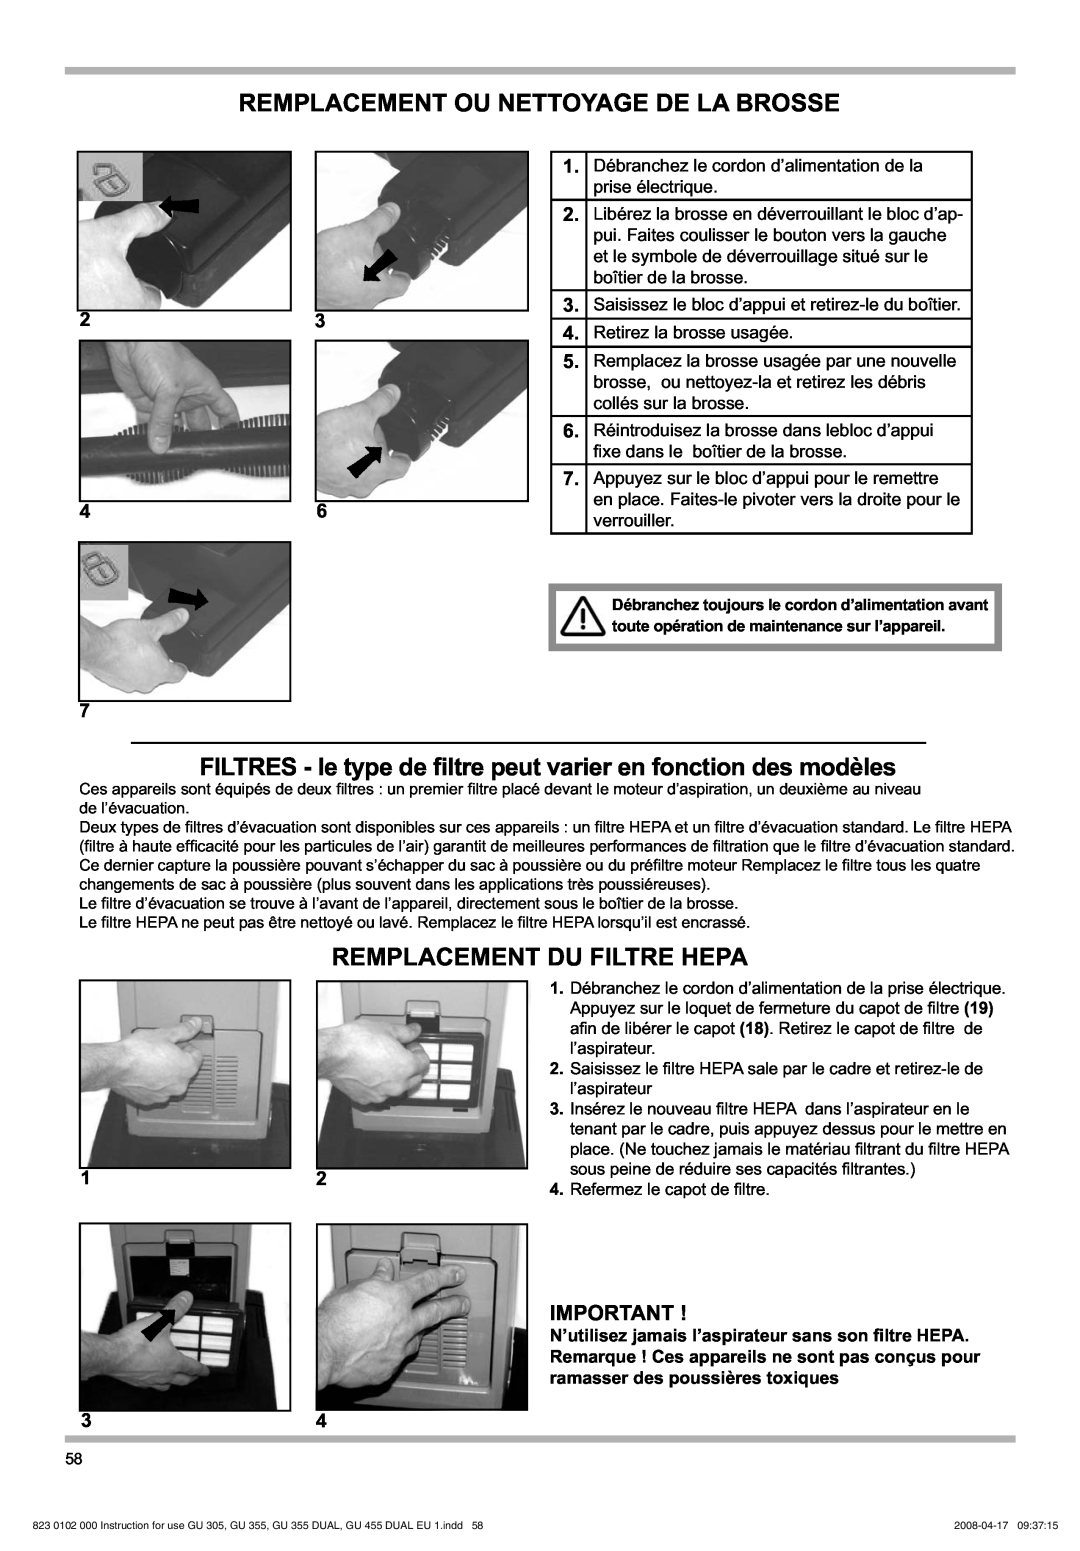 Nilfisk-Advance America GU 355, GU 305 manual Remplacement Ou Nettoyage De La Brosse, Remplacement Du Filtre Hepa, 23 46 